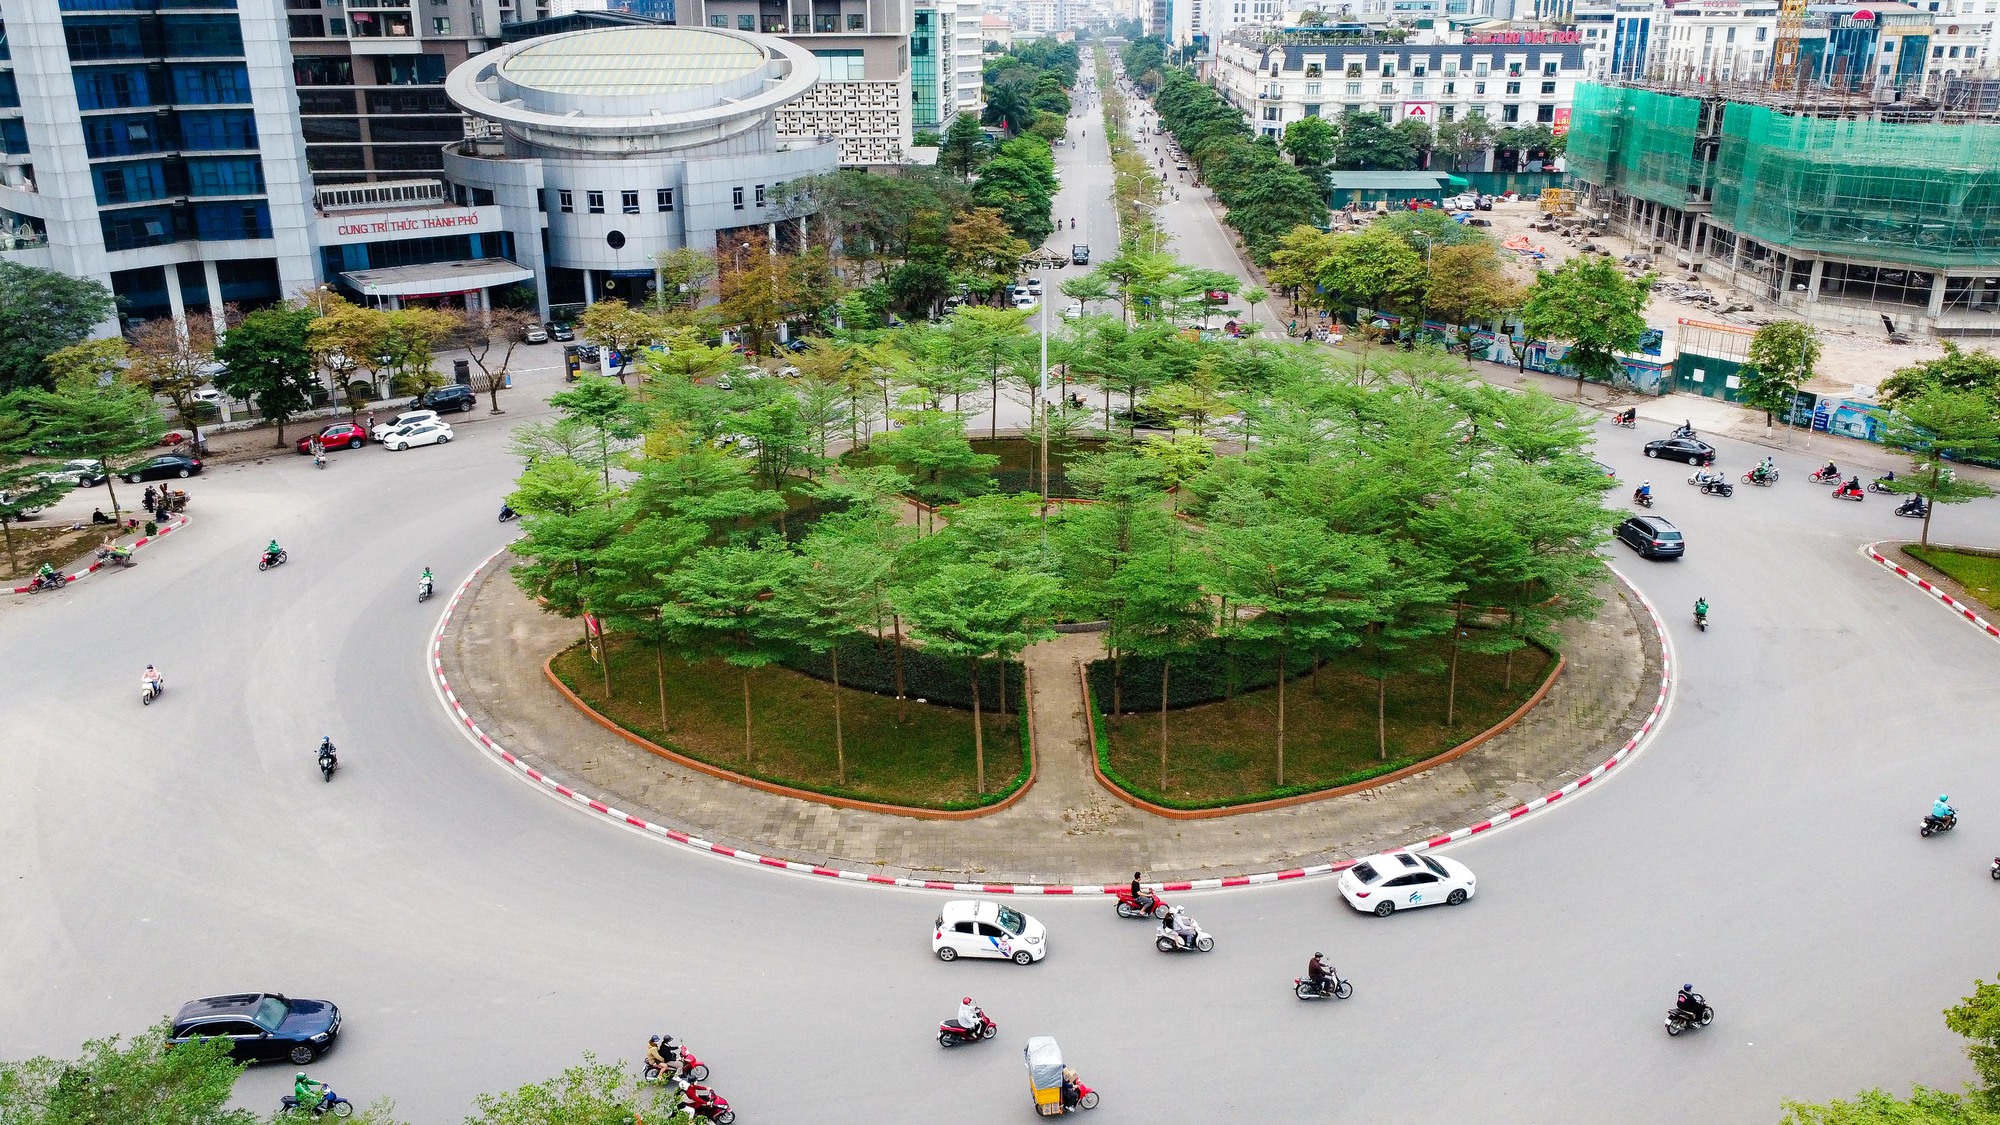 Trả hồ sơ vụ án cây xanh liên quan đến cựu chủ tịch Hà Nội Nguyễn Đức Chung - Ảnh 1.